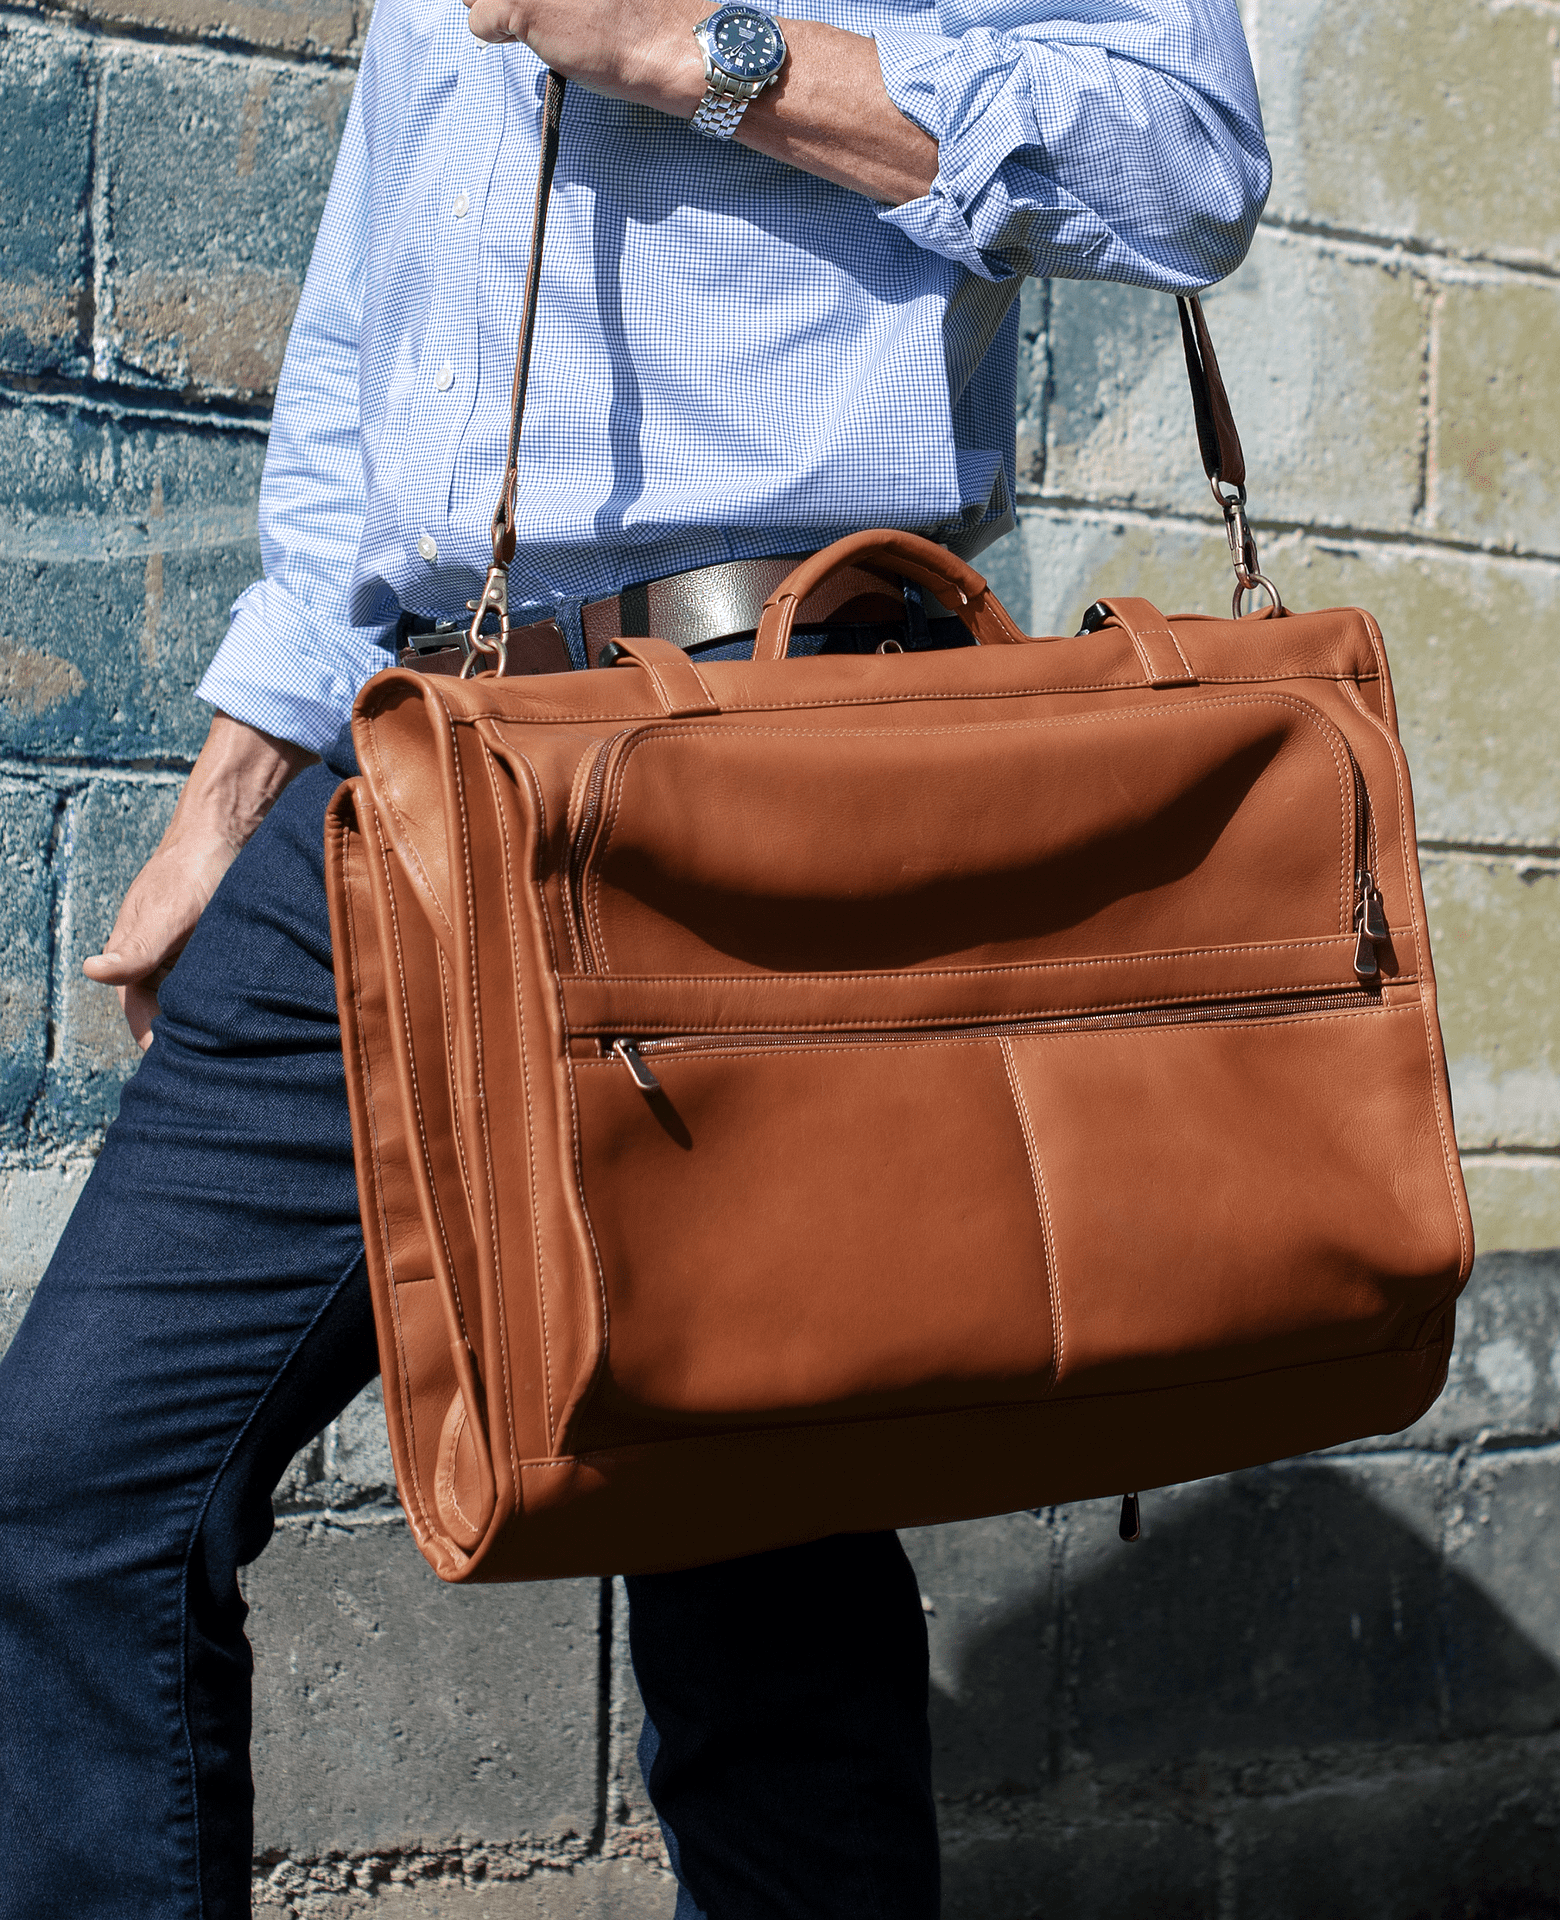 Men's Messenger Bag 15 Leather Briefcase Cosmopolitan Fashion Handmade Cross -body Bag Leather Shoulder Bag Large Satchel 